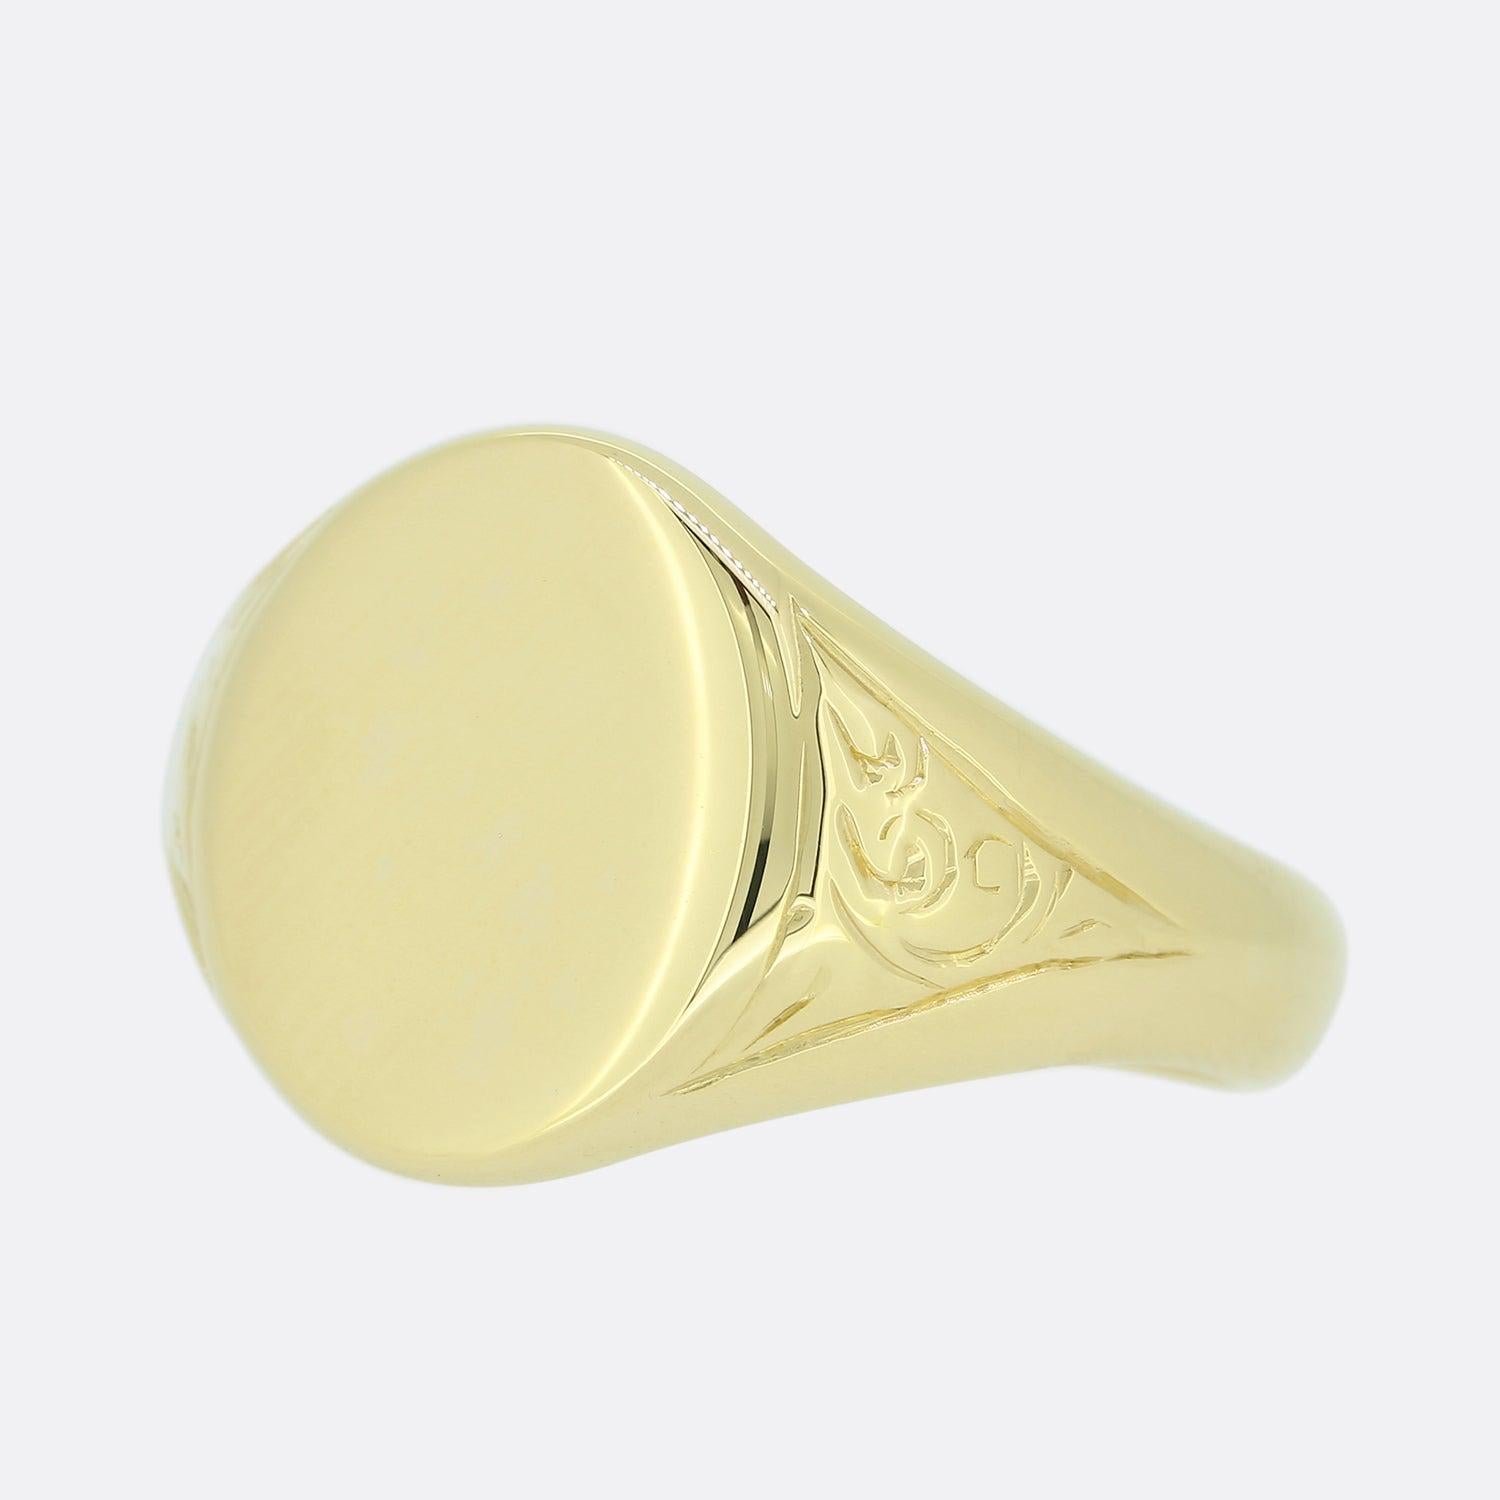 Dies ist ein Vintage 1950er Jahre 18ct Gelbgold Siegelring. Die Vorderseite des Rings ist oval und der Ring hat eine glatte, polierte Oberfläche.

Zustand: Gebraucht (Sehr gut)
Gewicht: 9,2 Gramm
Ringgröße: Q
Abmessungen der Oberfläche: 14mm x